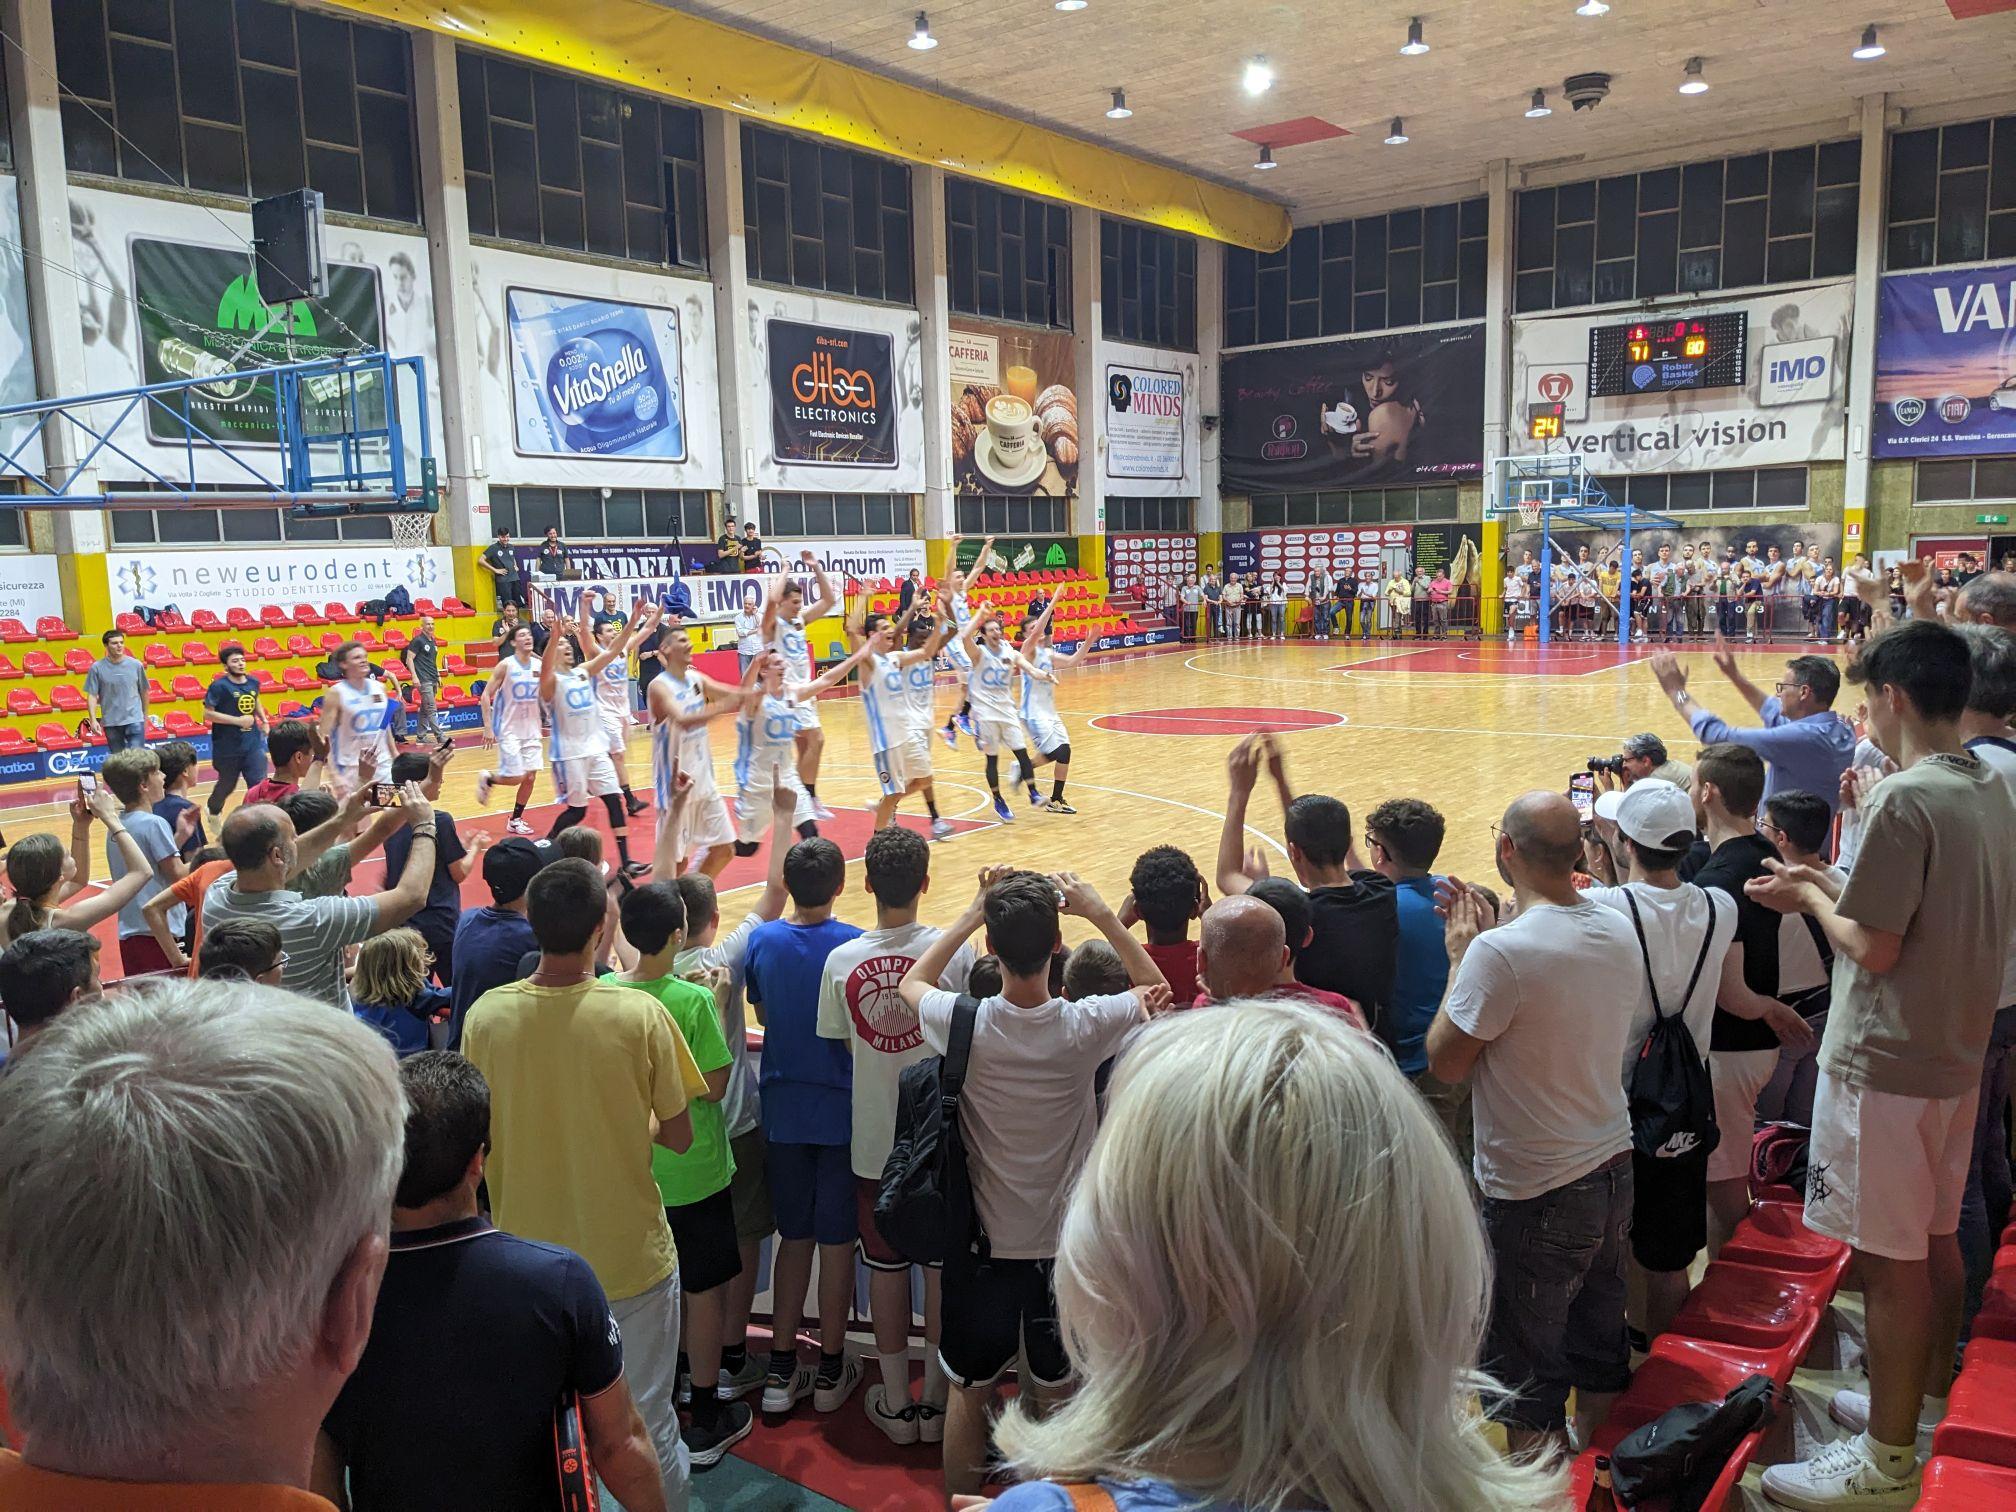 Che sabato di sport a Saronno: Robur campione regionale nel basket, Fbc vincente ai playoff juniores. Al Saronno il derby del softball con Caronno